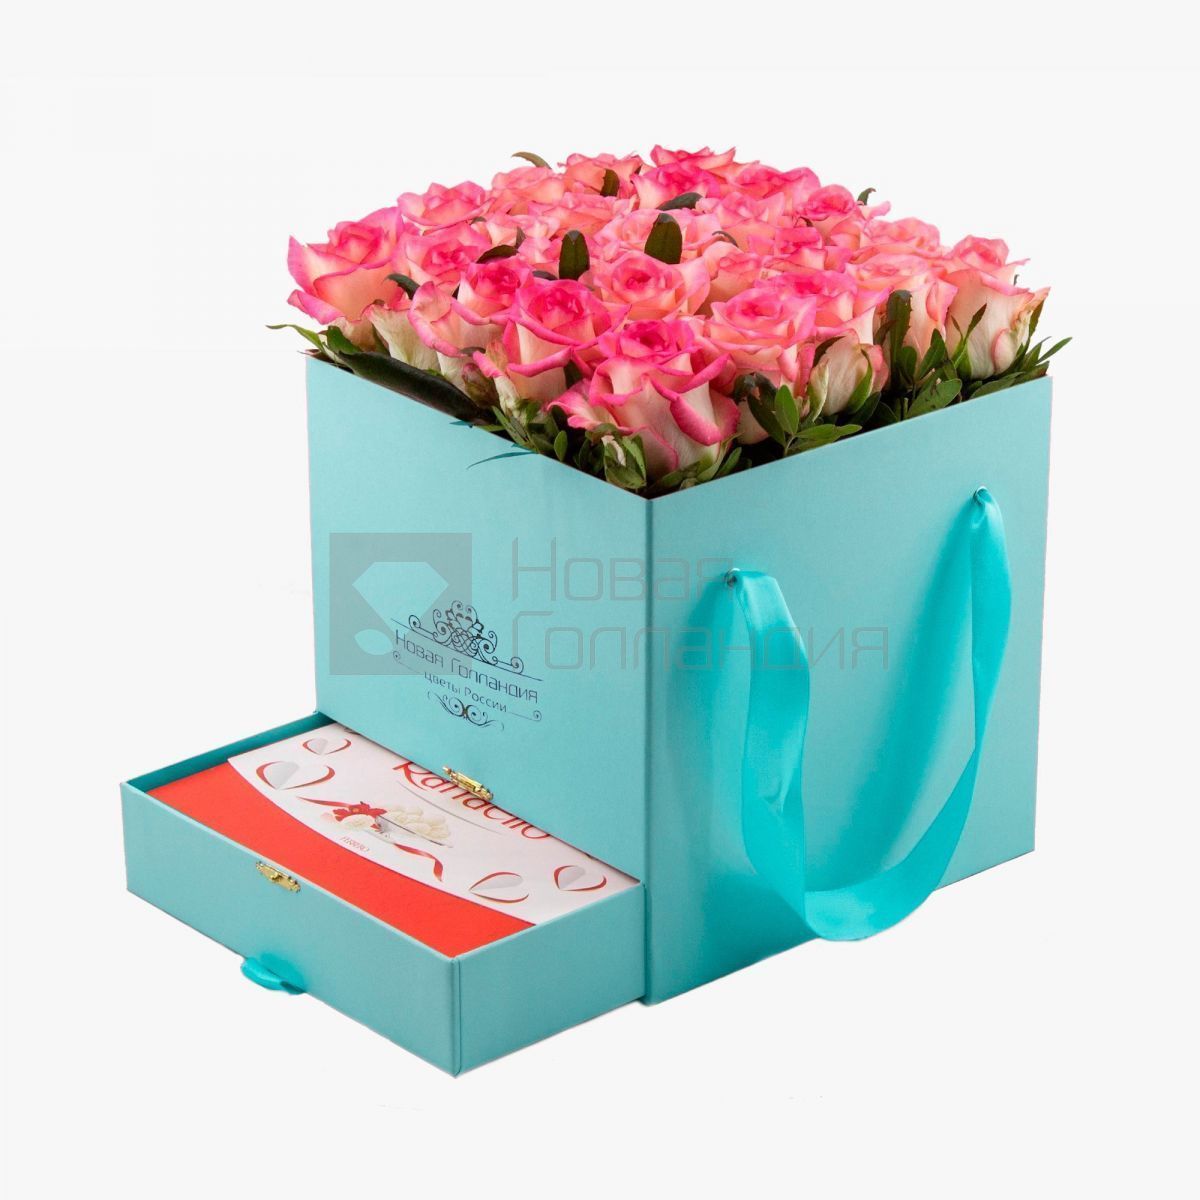 Тиффани коробка шкатулка 25 розовых роз Raffaello в подарок №678